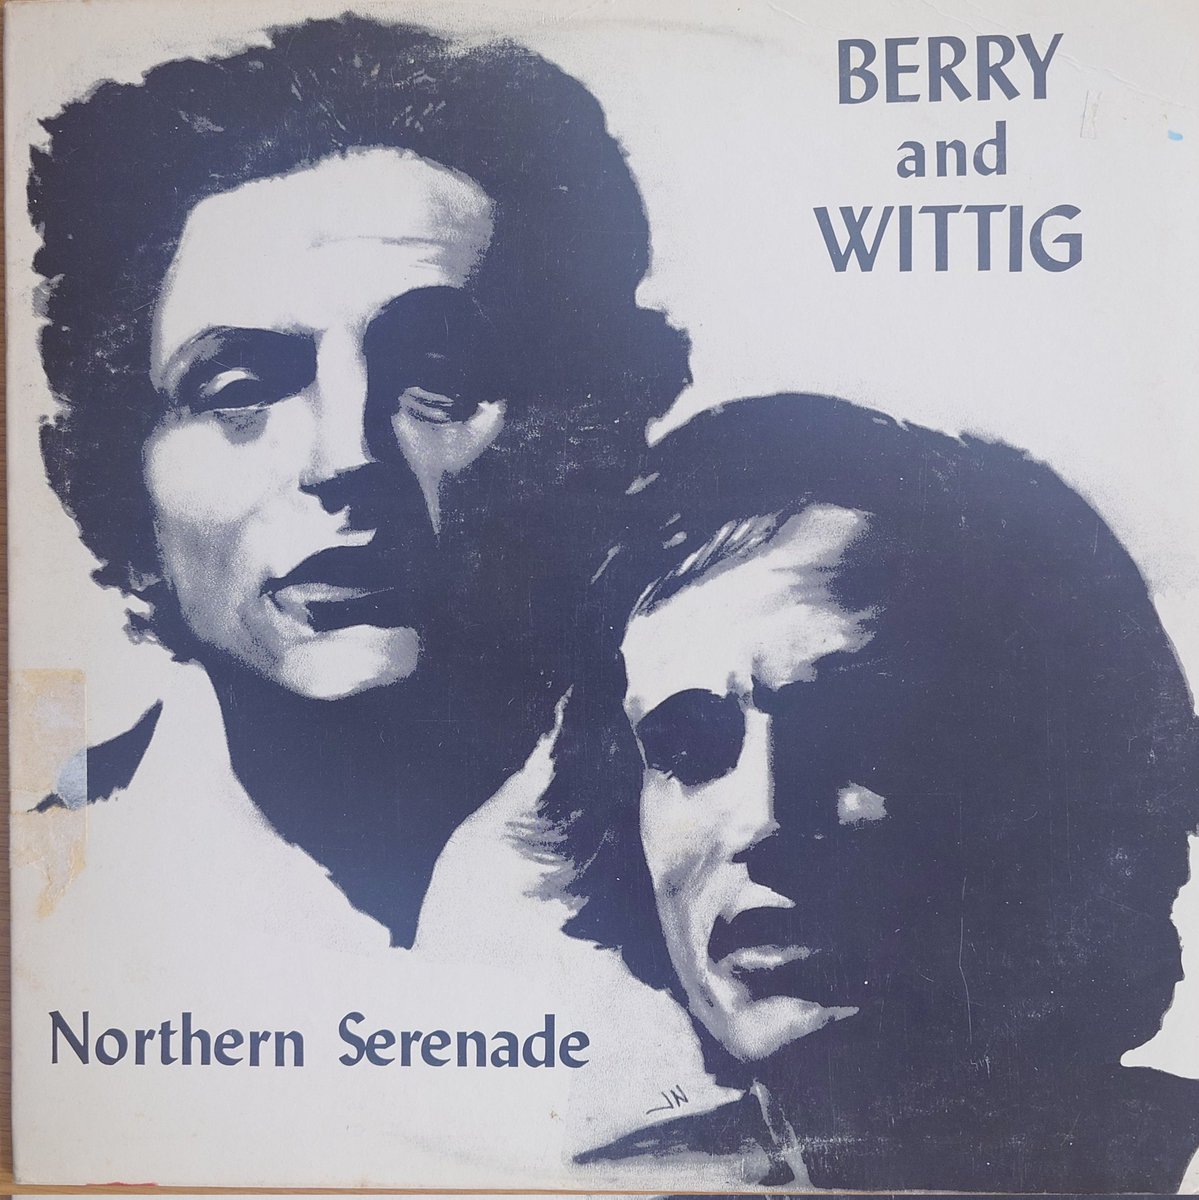 【新規出品】
Berry and Wittig / Northern Serenade

ミネソタ州ミネアポリス出身のフォークデュオによる唯一のアルバム。1979年の作品とは思えない素朴な味わいが魅力です。
#シェア音楽棚tent     #西荻窪
#SSW

blog.goo.ne.jp/milkwood/e/709…